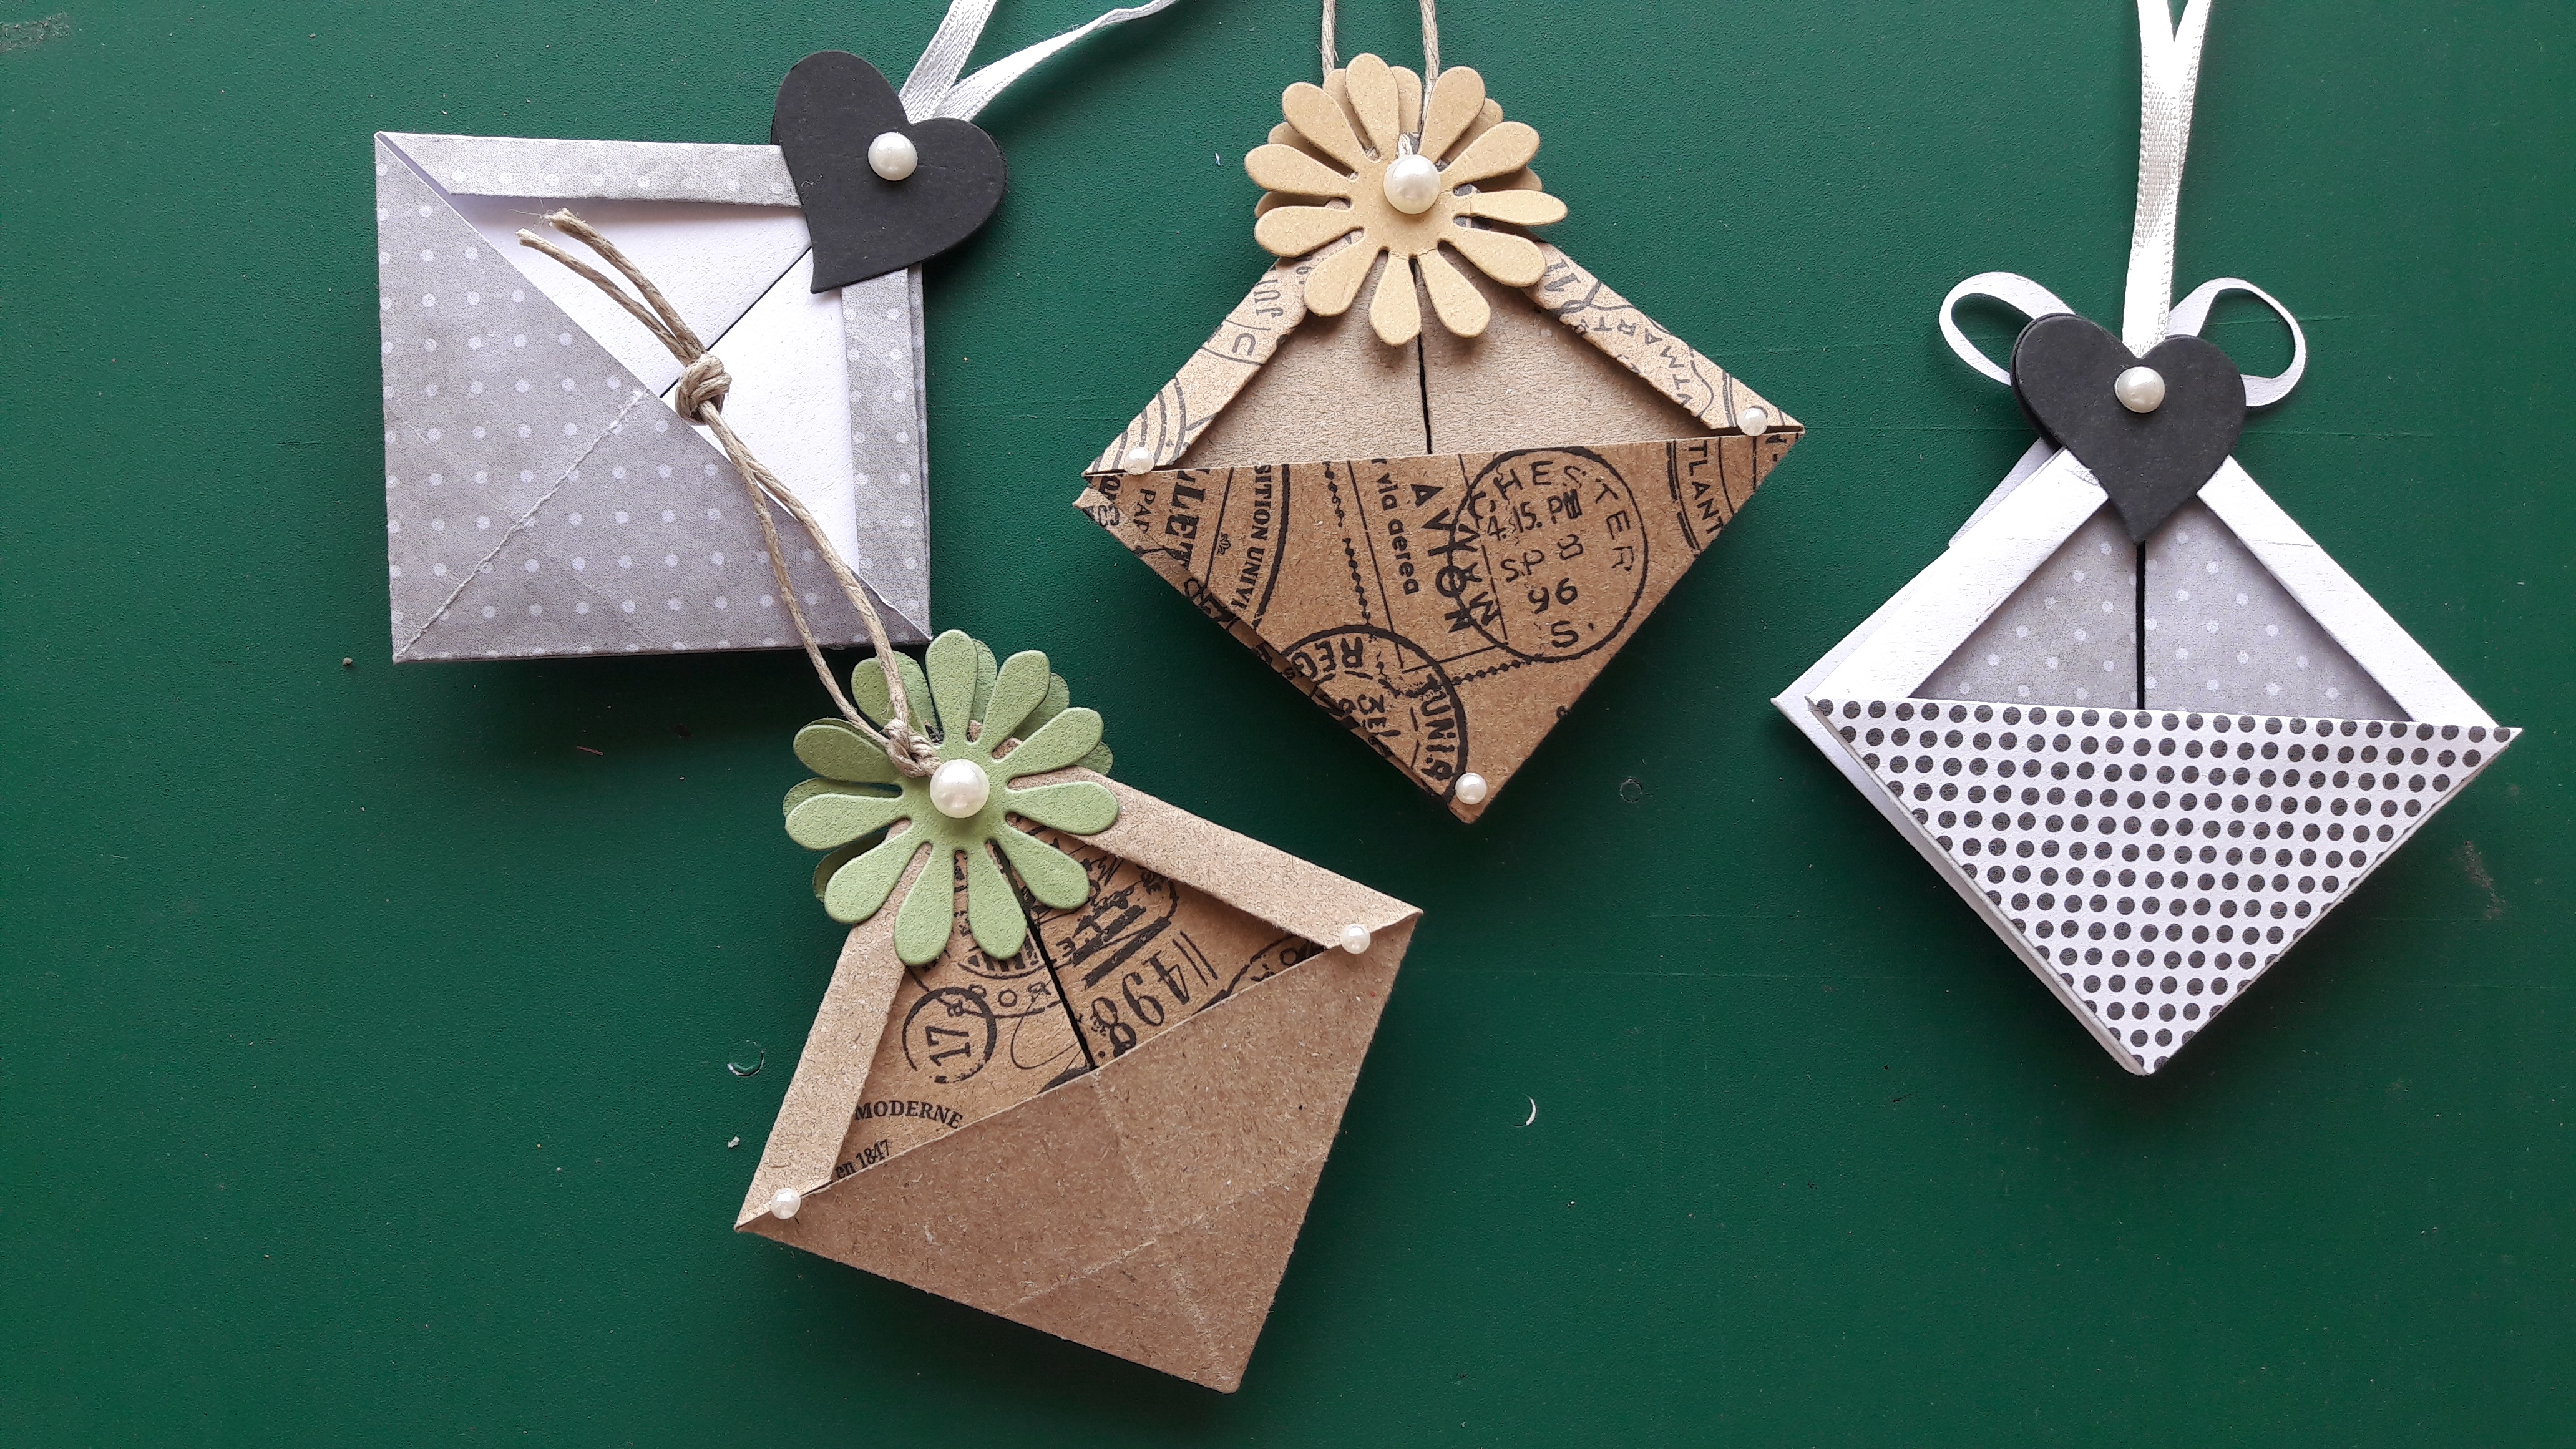 origami bookmark